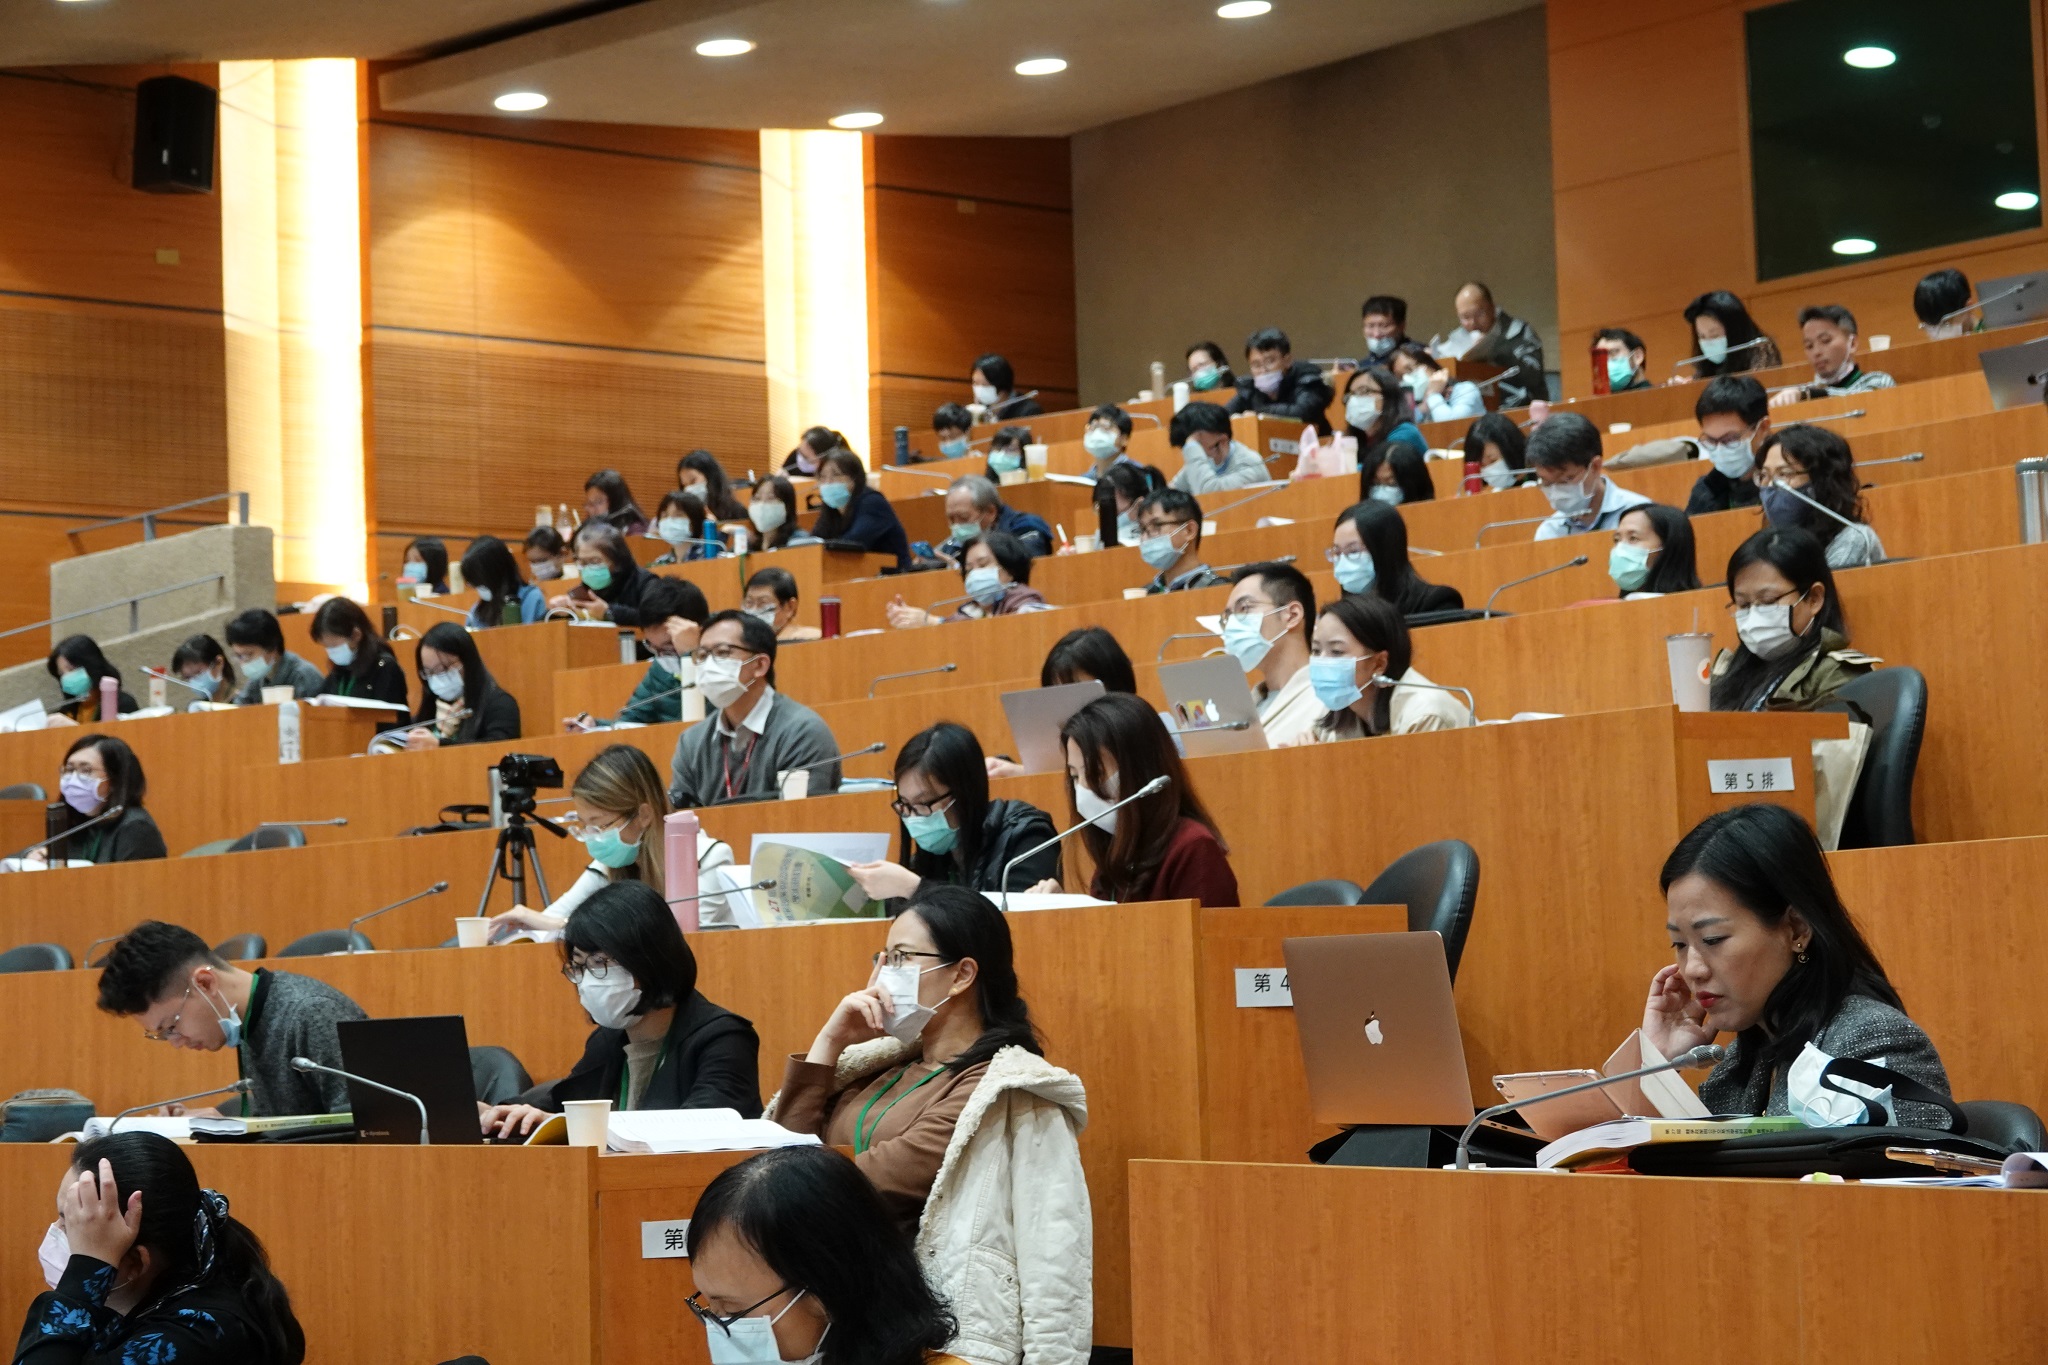 109年12月17日、18日於臺灣大學法律學院舉辦之第27屆「競爭政策與公平交易法學術研討會」現場實景